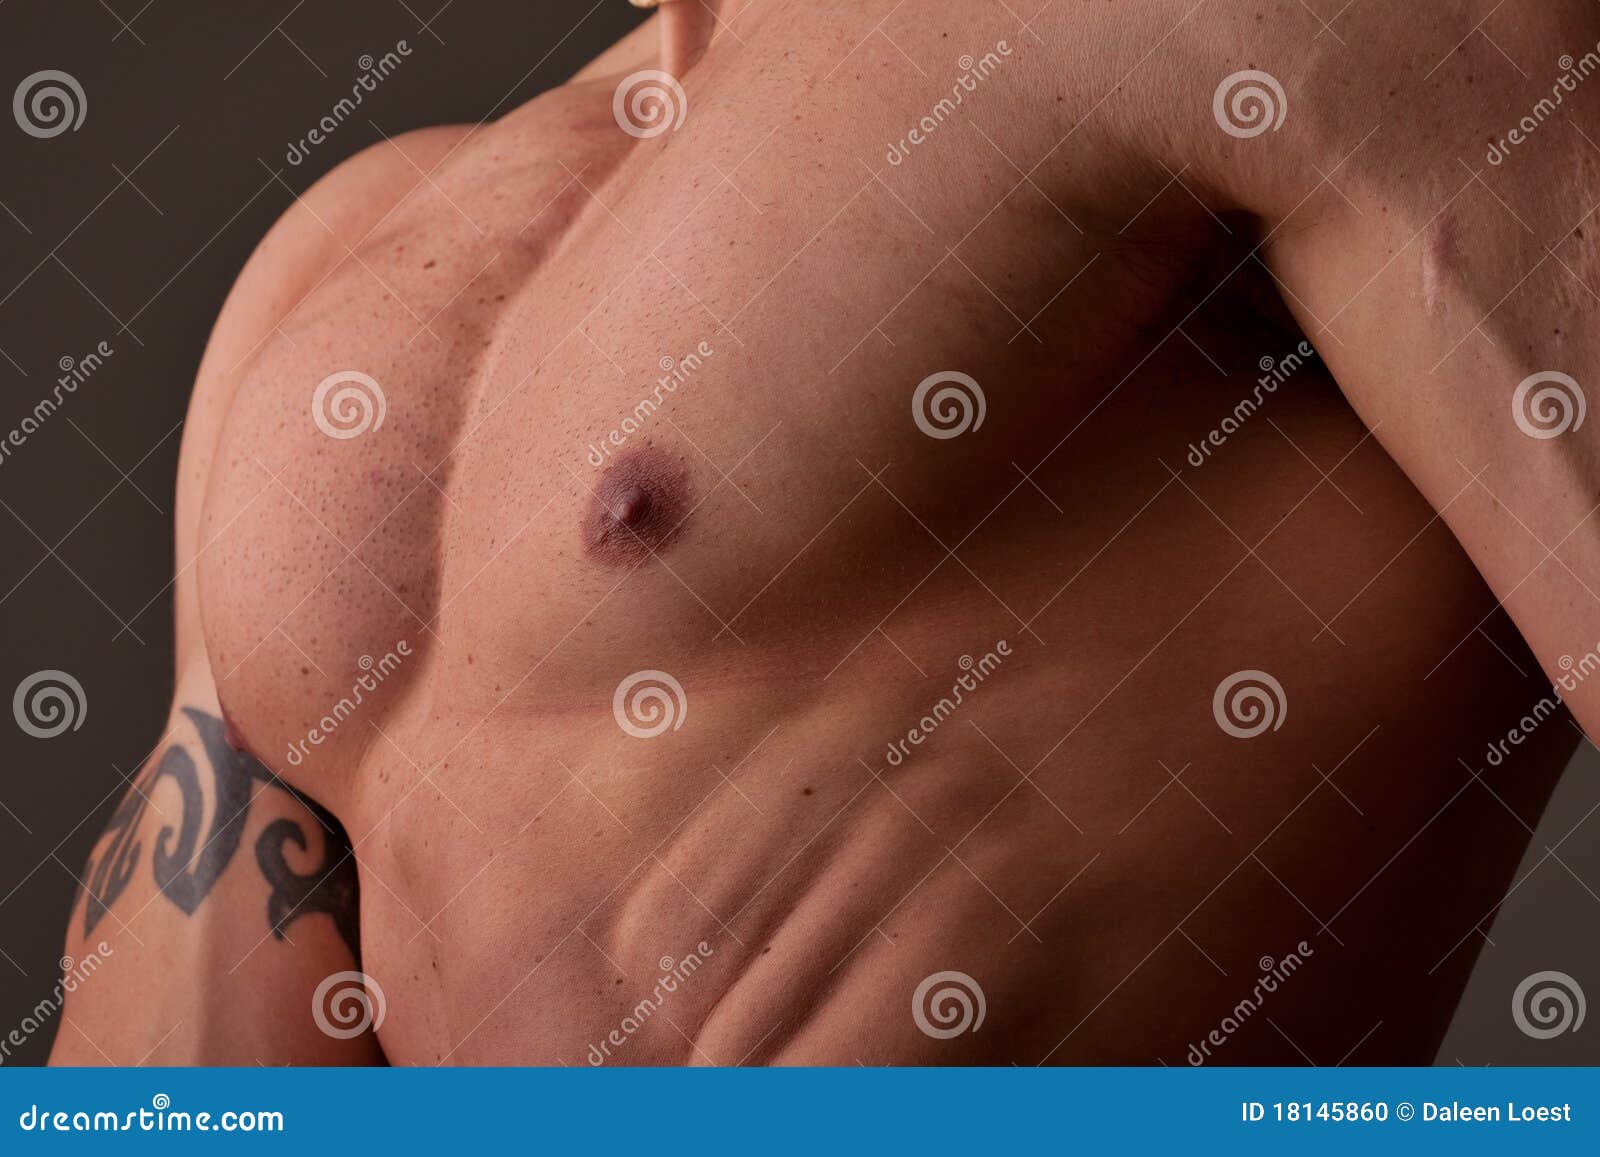 мужская грудь с сосками фото 105